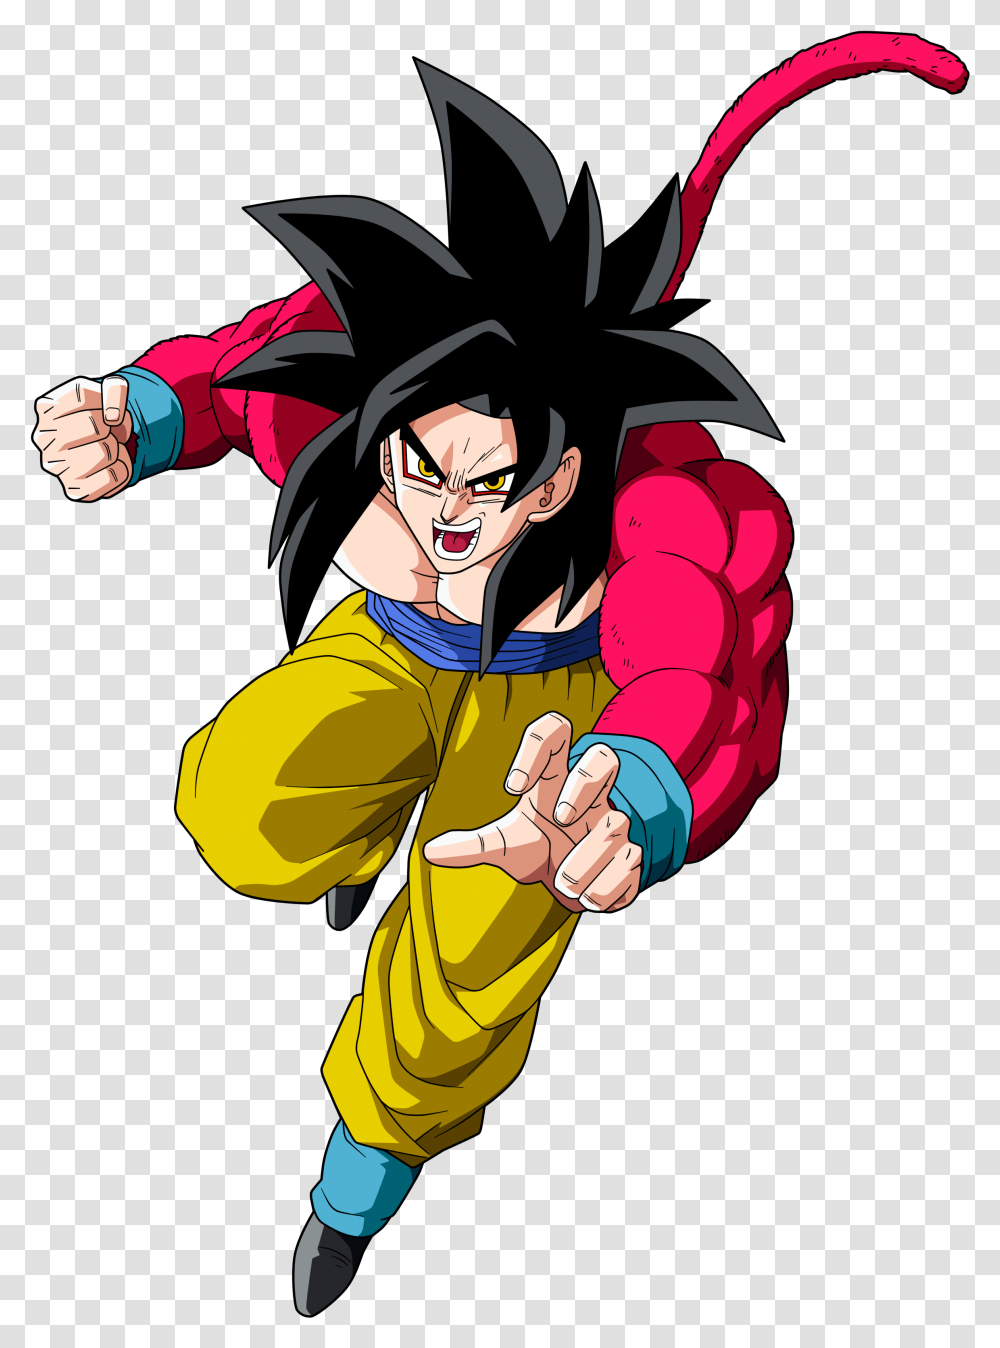 Super Saiyan 4 Goku Goku Ssj 4 Dragon Ball Goku Goku Gt Super Saiyan, Person, Human, Manga, Comics Transparent Png